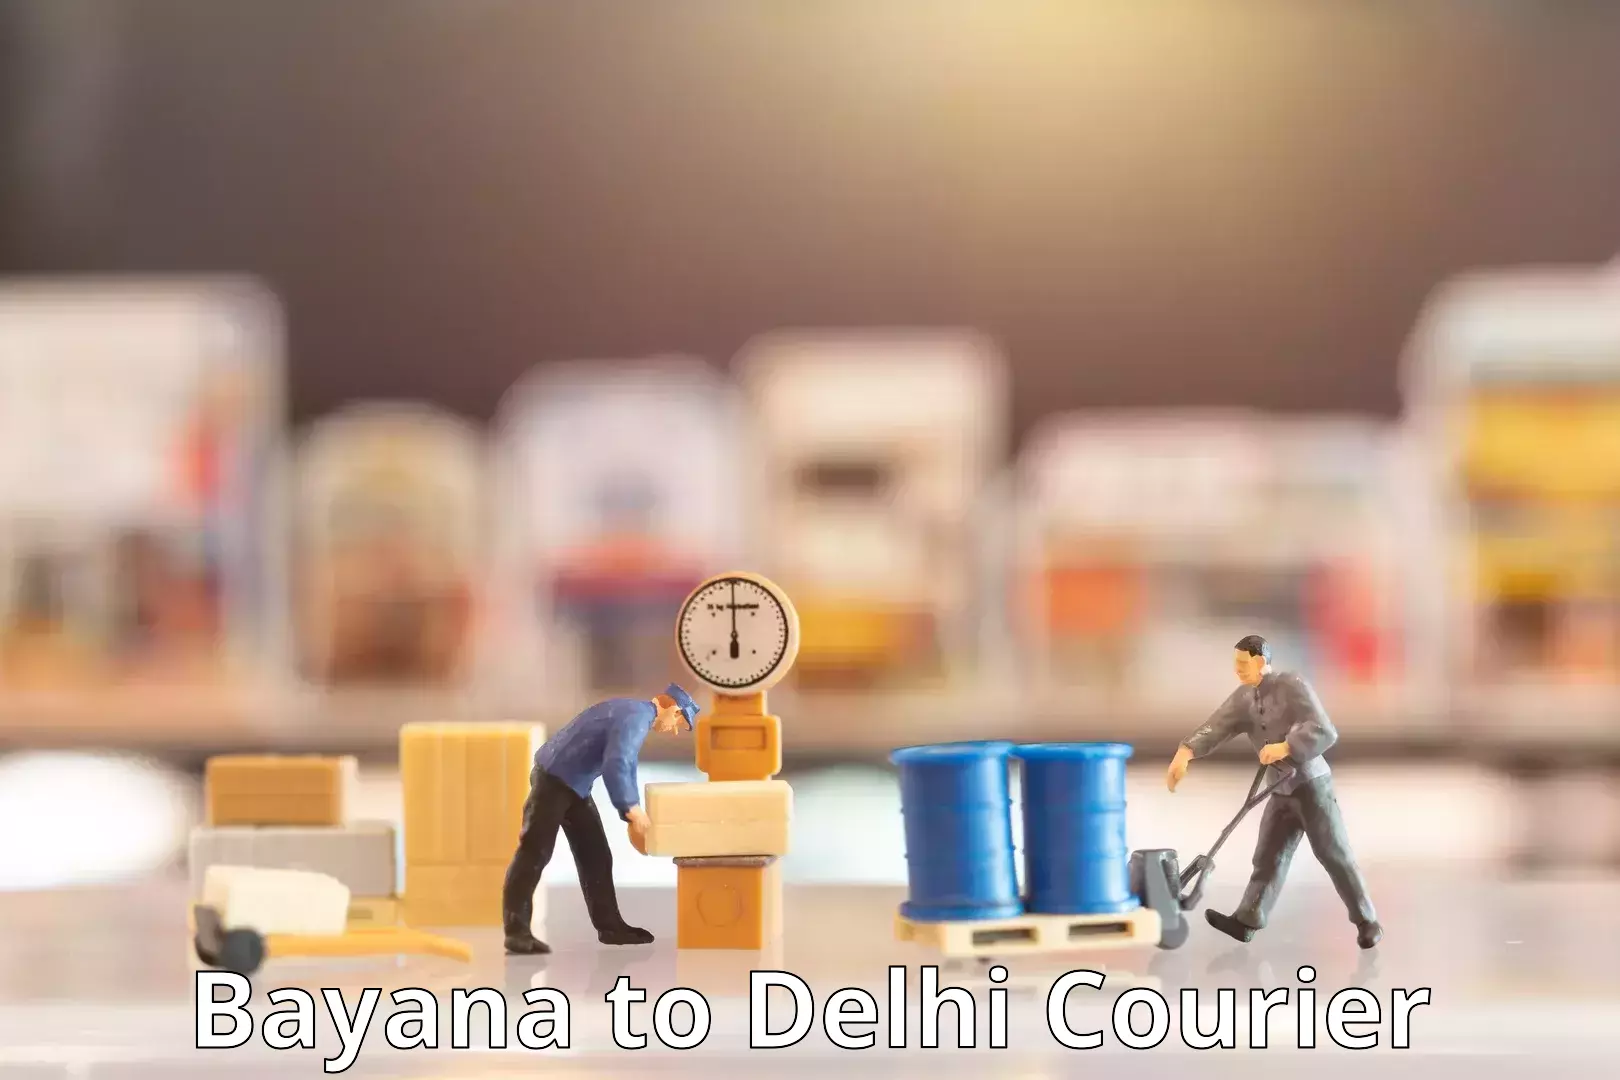 Efficient order fulfillment Bayana to East Delhi